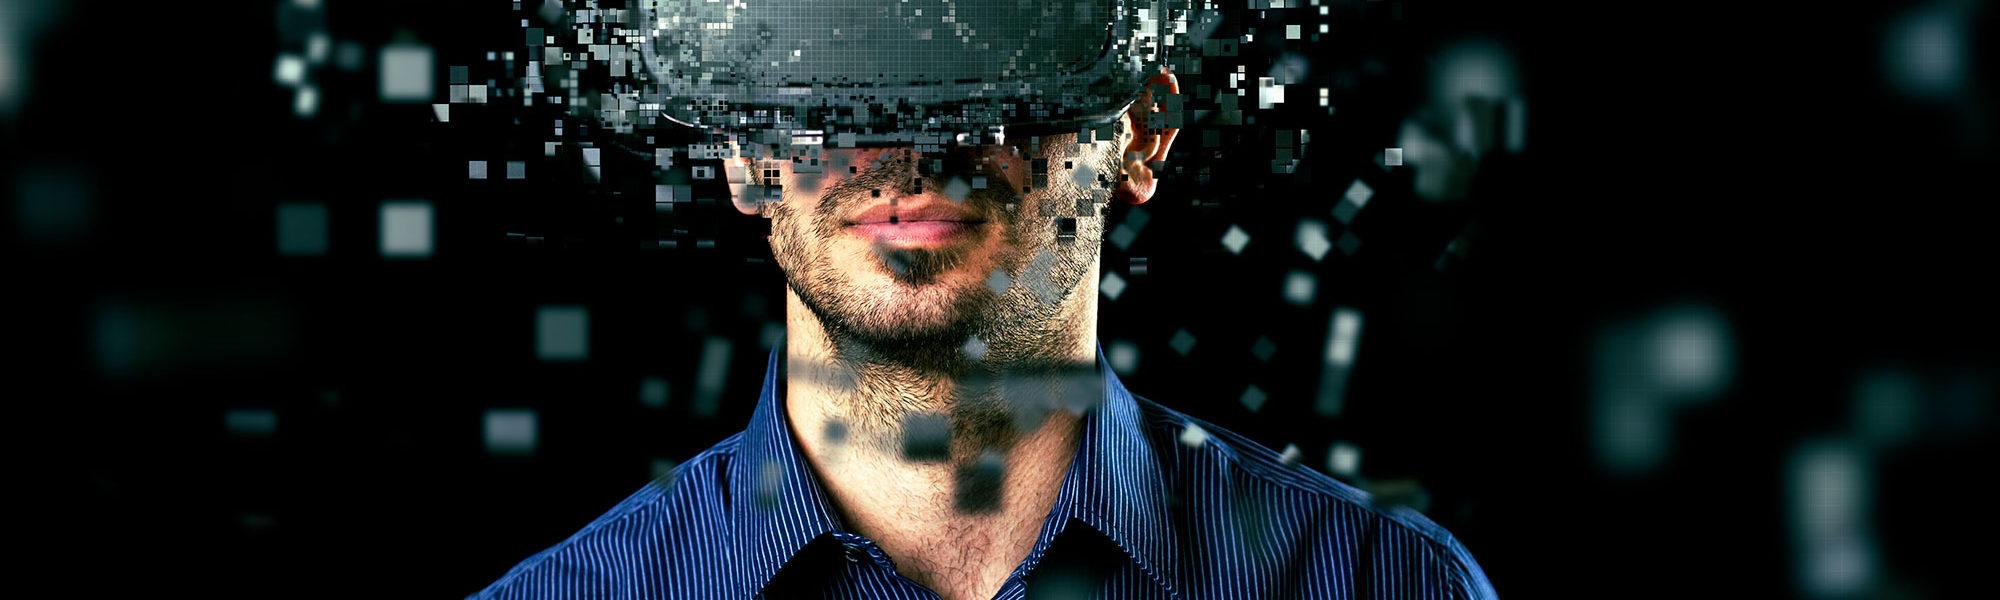 Technologie-Mann Virtual Reality